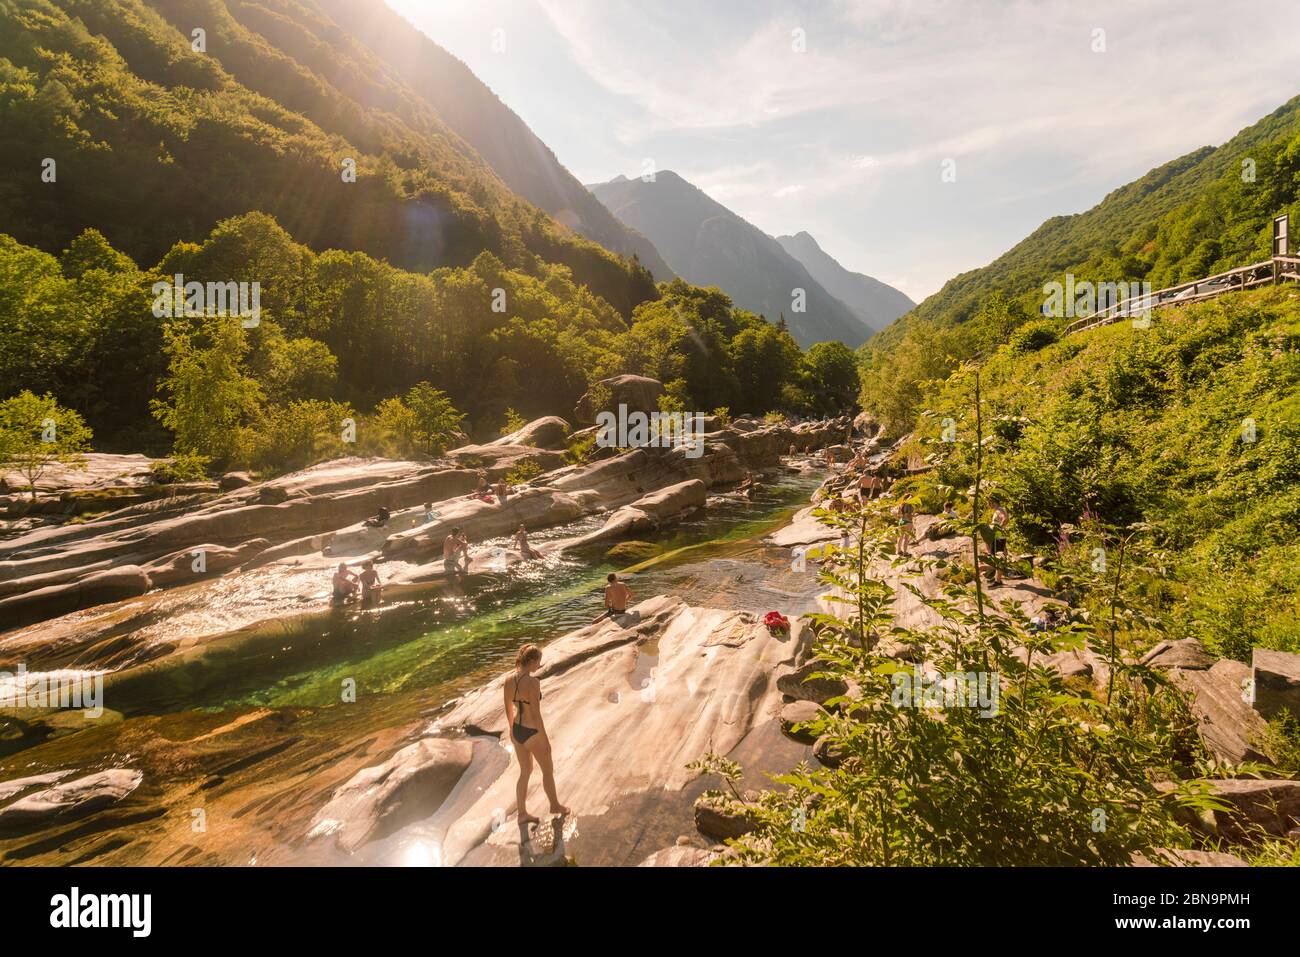 fiume verzasca e valle in estate con la gente prendere il sole Foto Stock